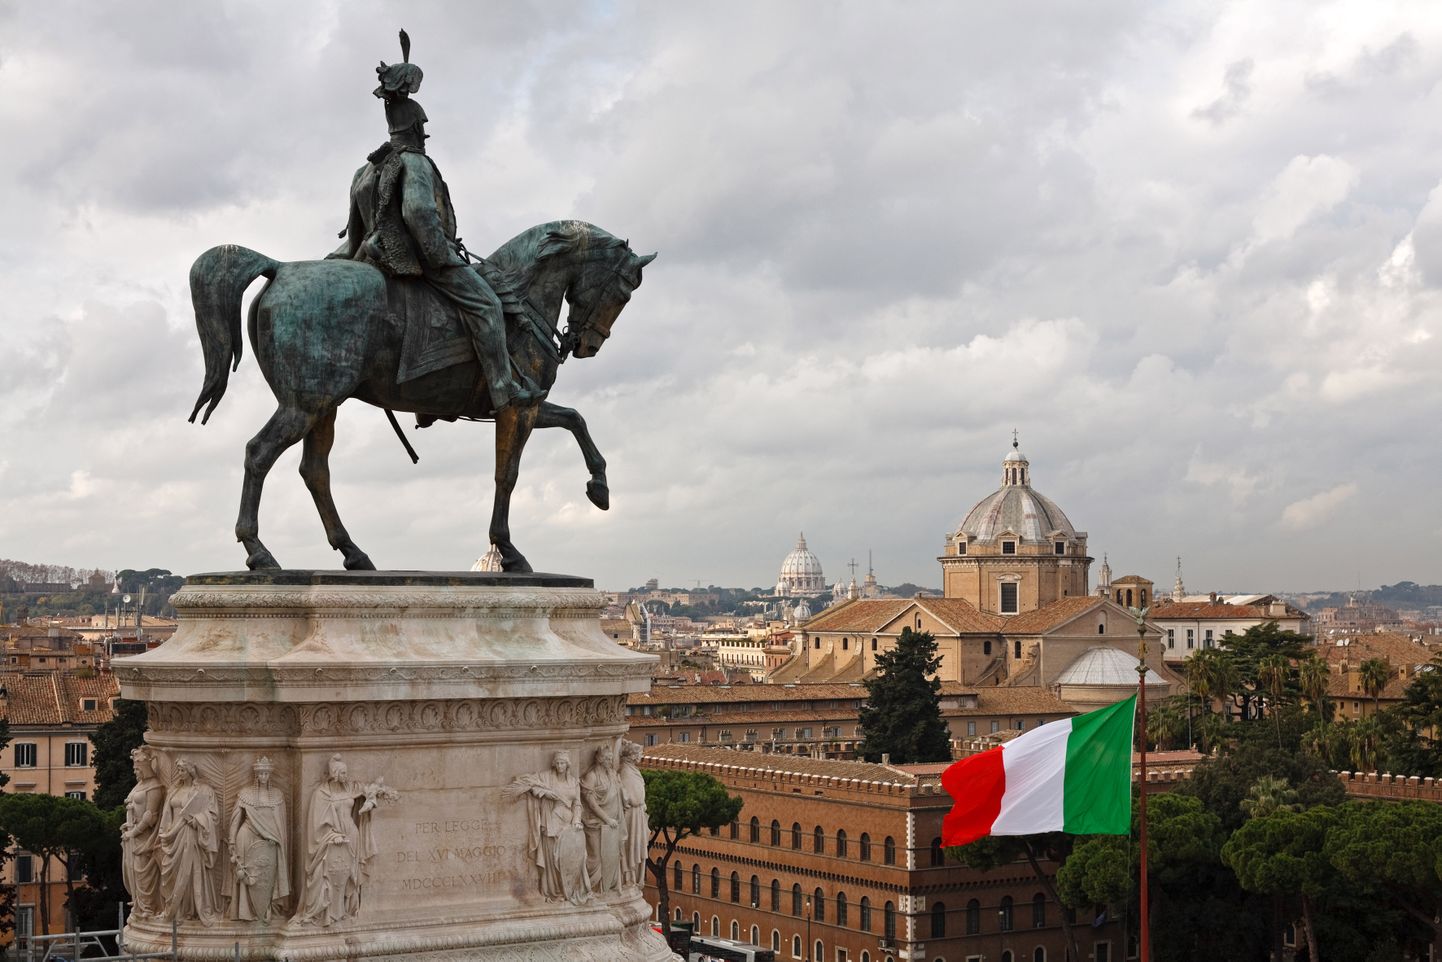 Vaade Roomale. Pildil ratsamonument Itaalia kuningale Vittorio Emanuele II-le